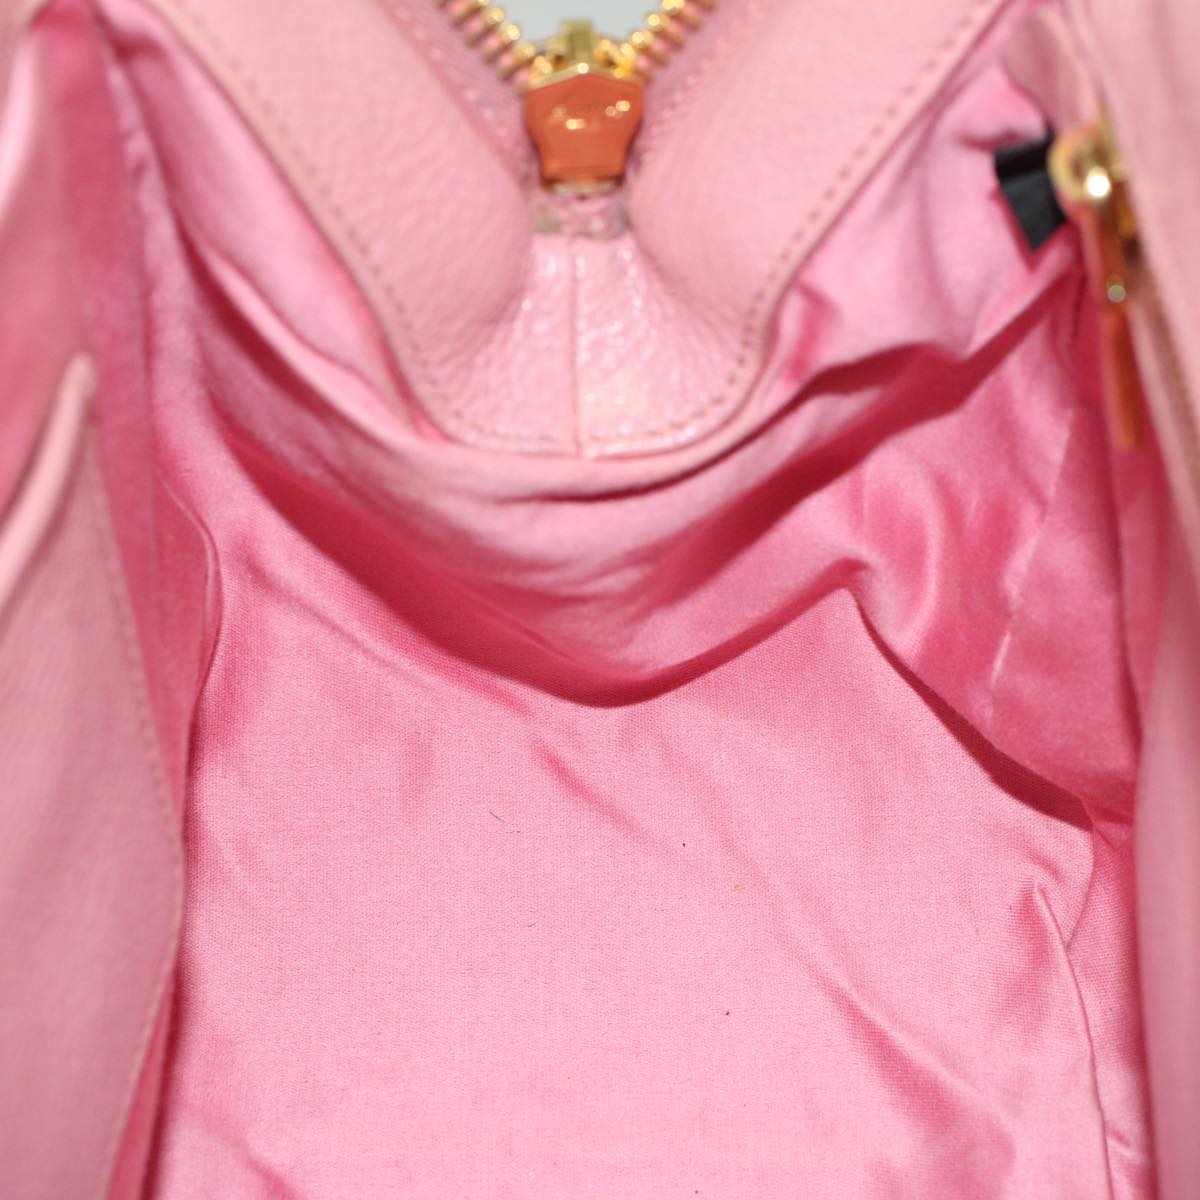 Miu Miu Hand Bag Leather 2way Pink Auth am5171